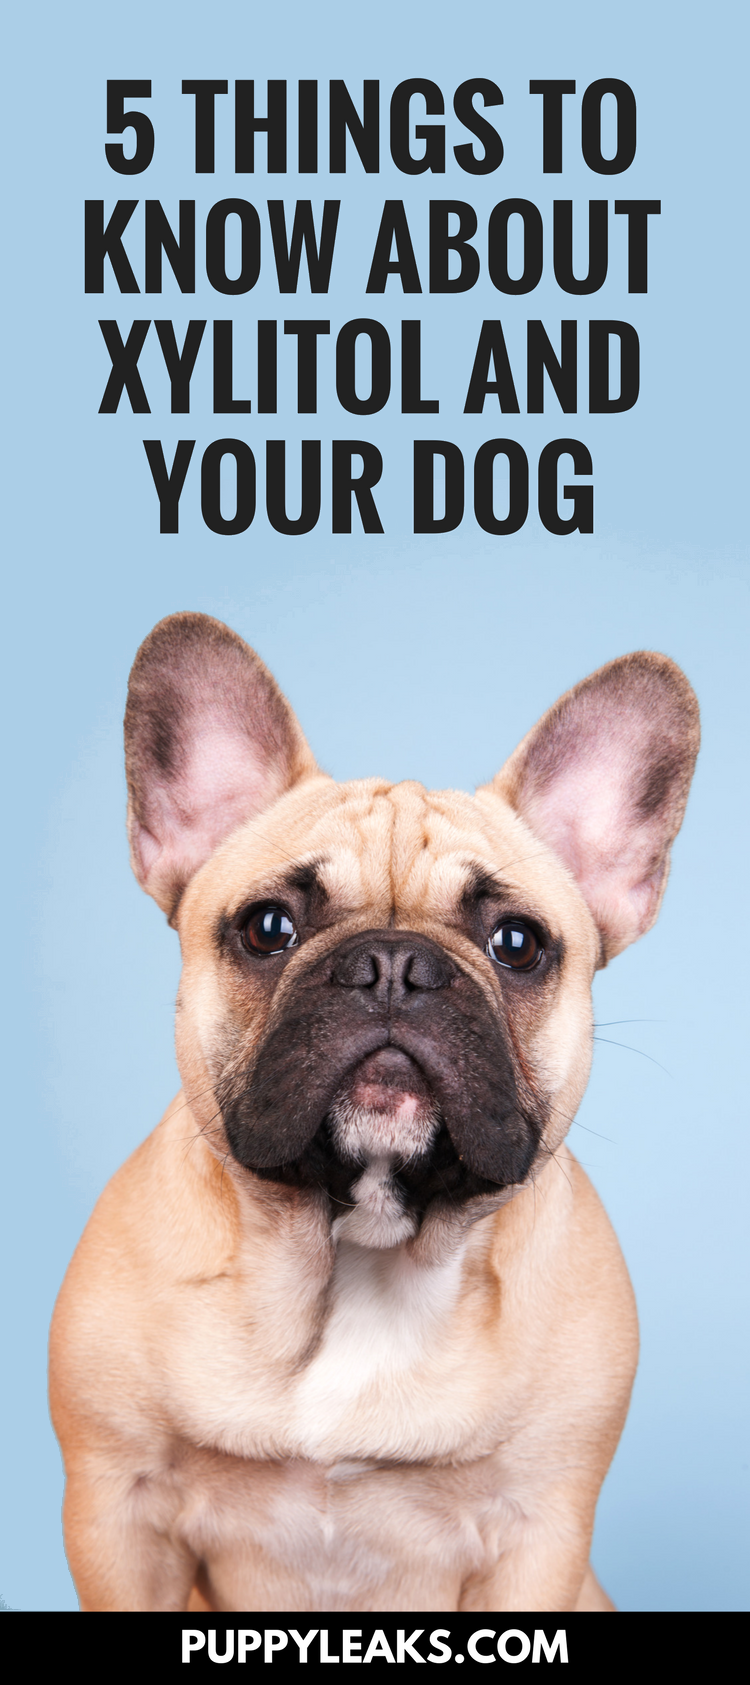 Xylitol:Det konstgjorda sötningsmedlet som kan vara dödligt för hundar